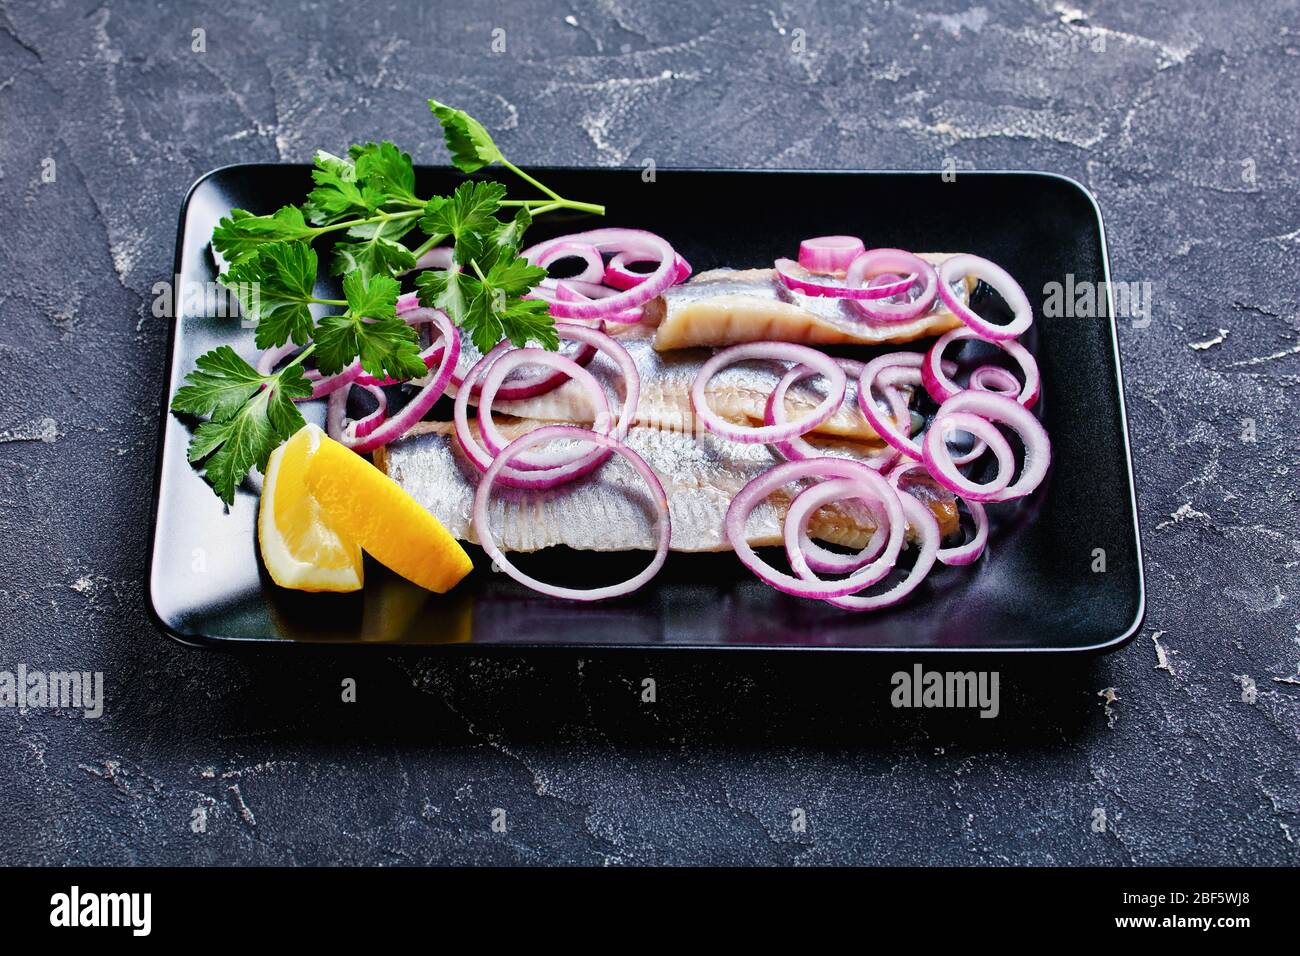 Cuisine scandinave hareng salé - poisson gras frais servi sur une plaque noire avec rondelles d'oignon rouge, persil et quartiers de citron avec couverts sur un c foncé Banque D'Images